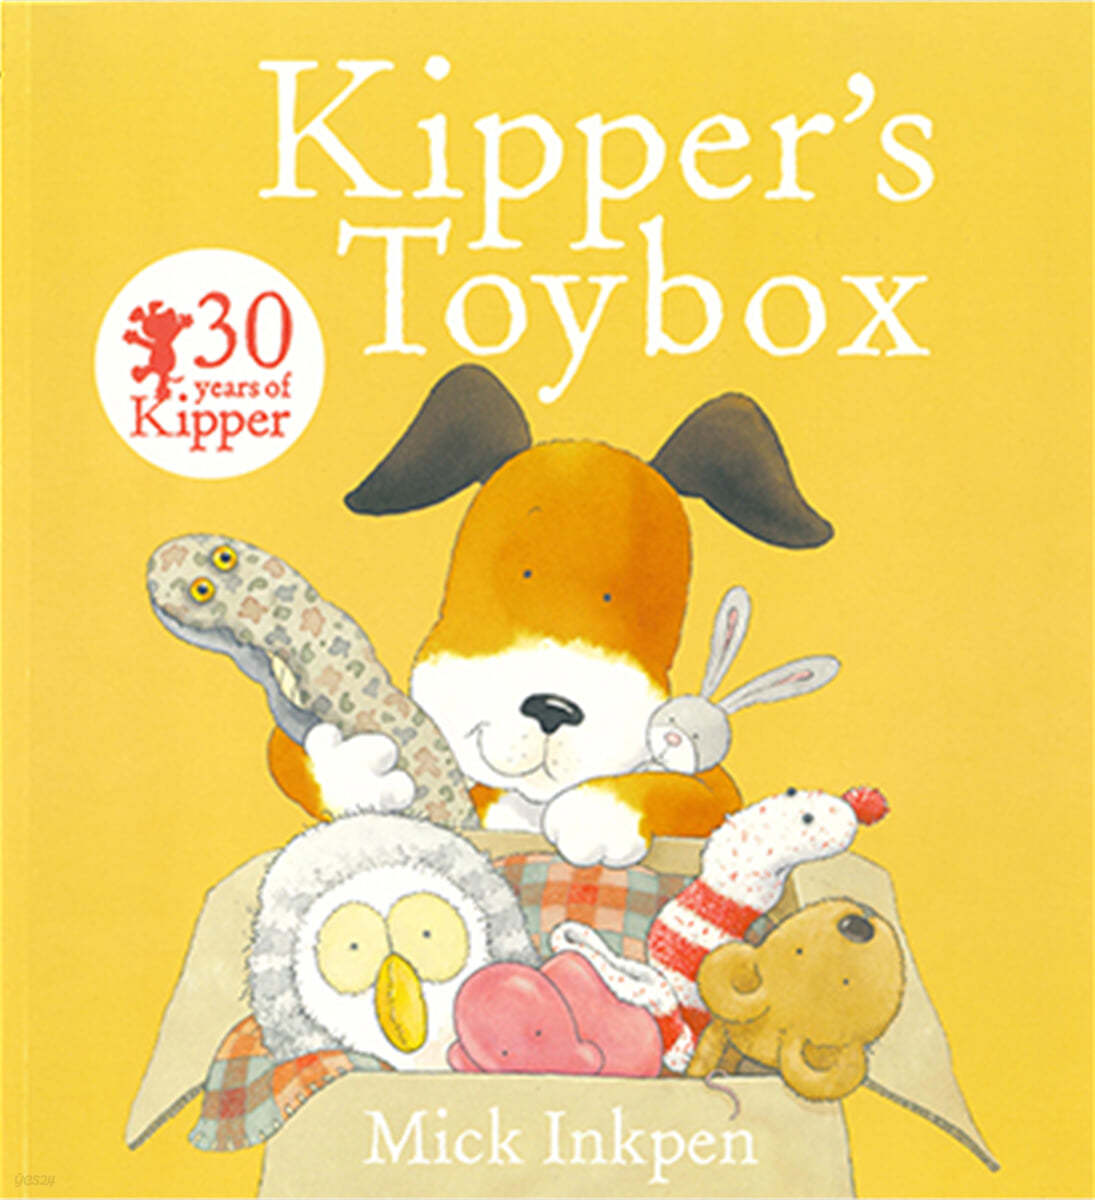 Kipper's toy box